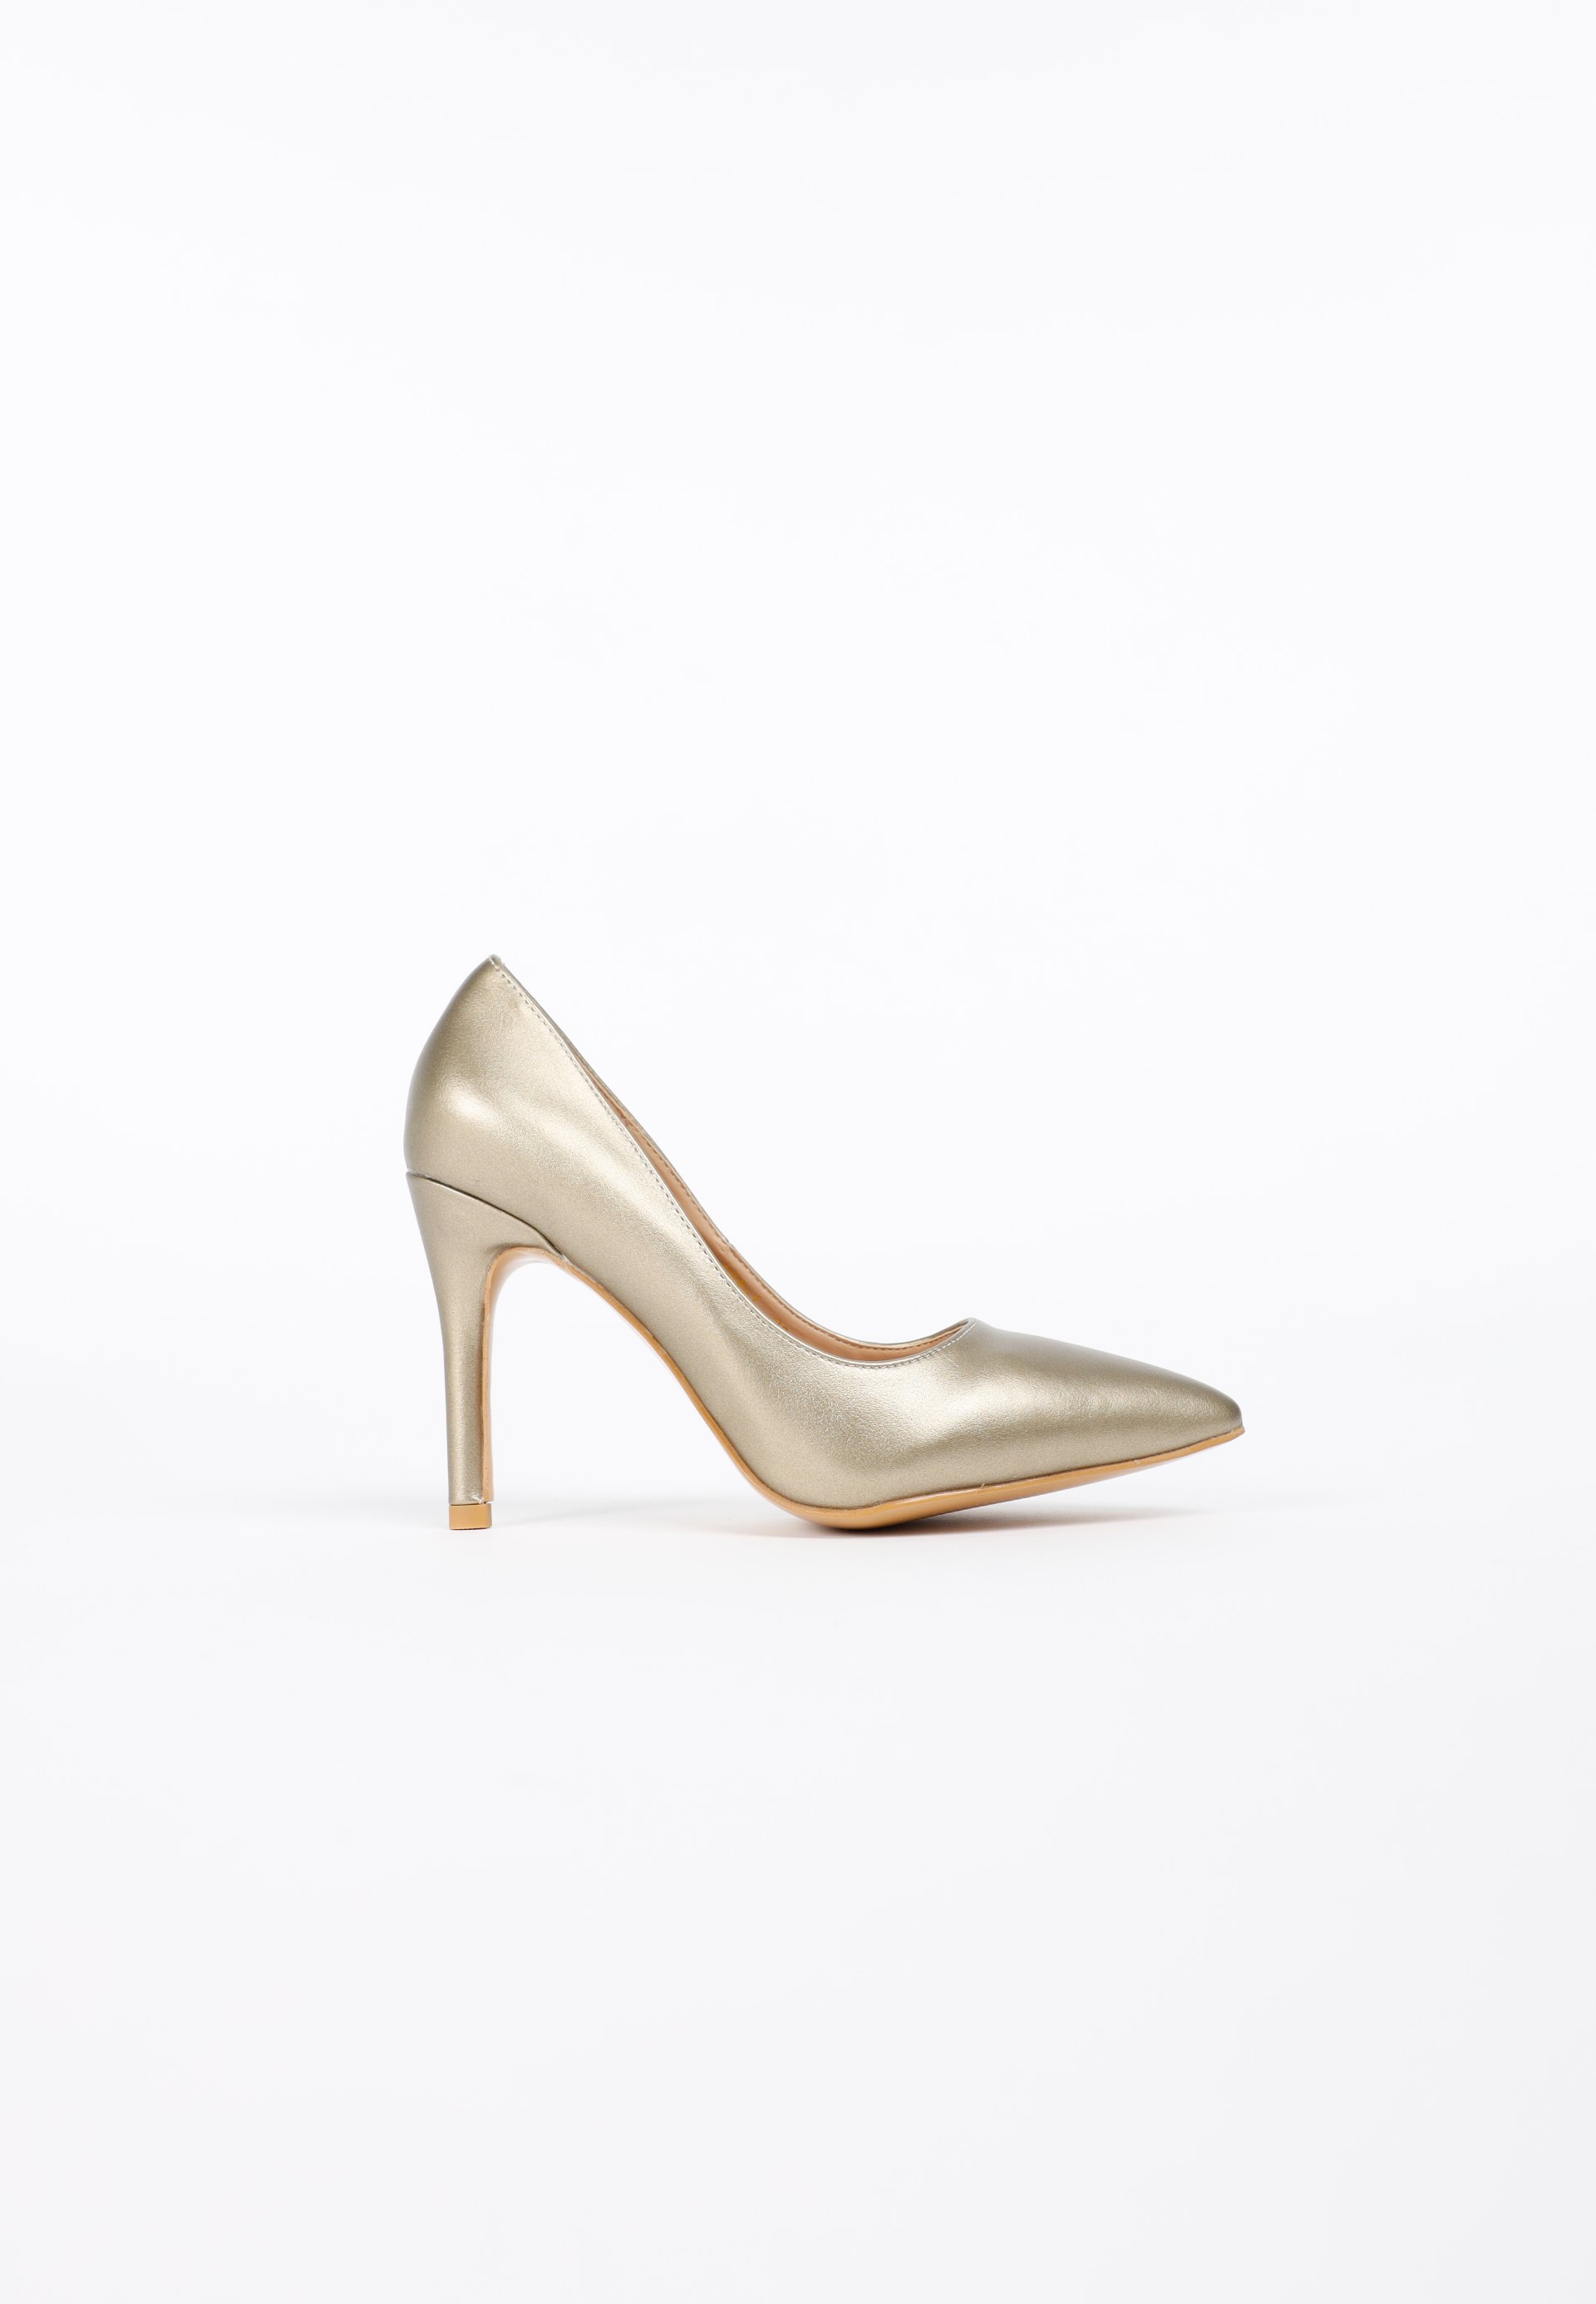 รองเท้าส้นสูง ดีไซน์หัวแหลม Gold Caldora High Heels MAC & GILL